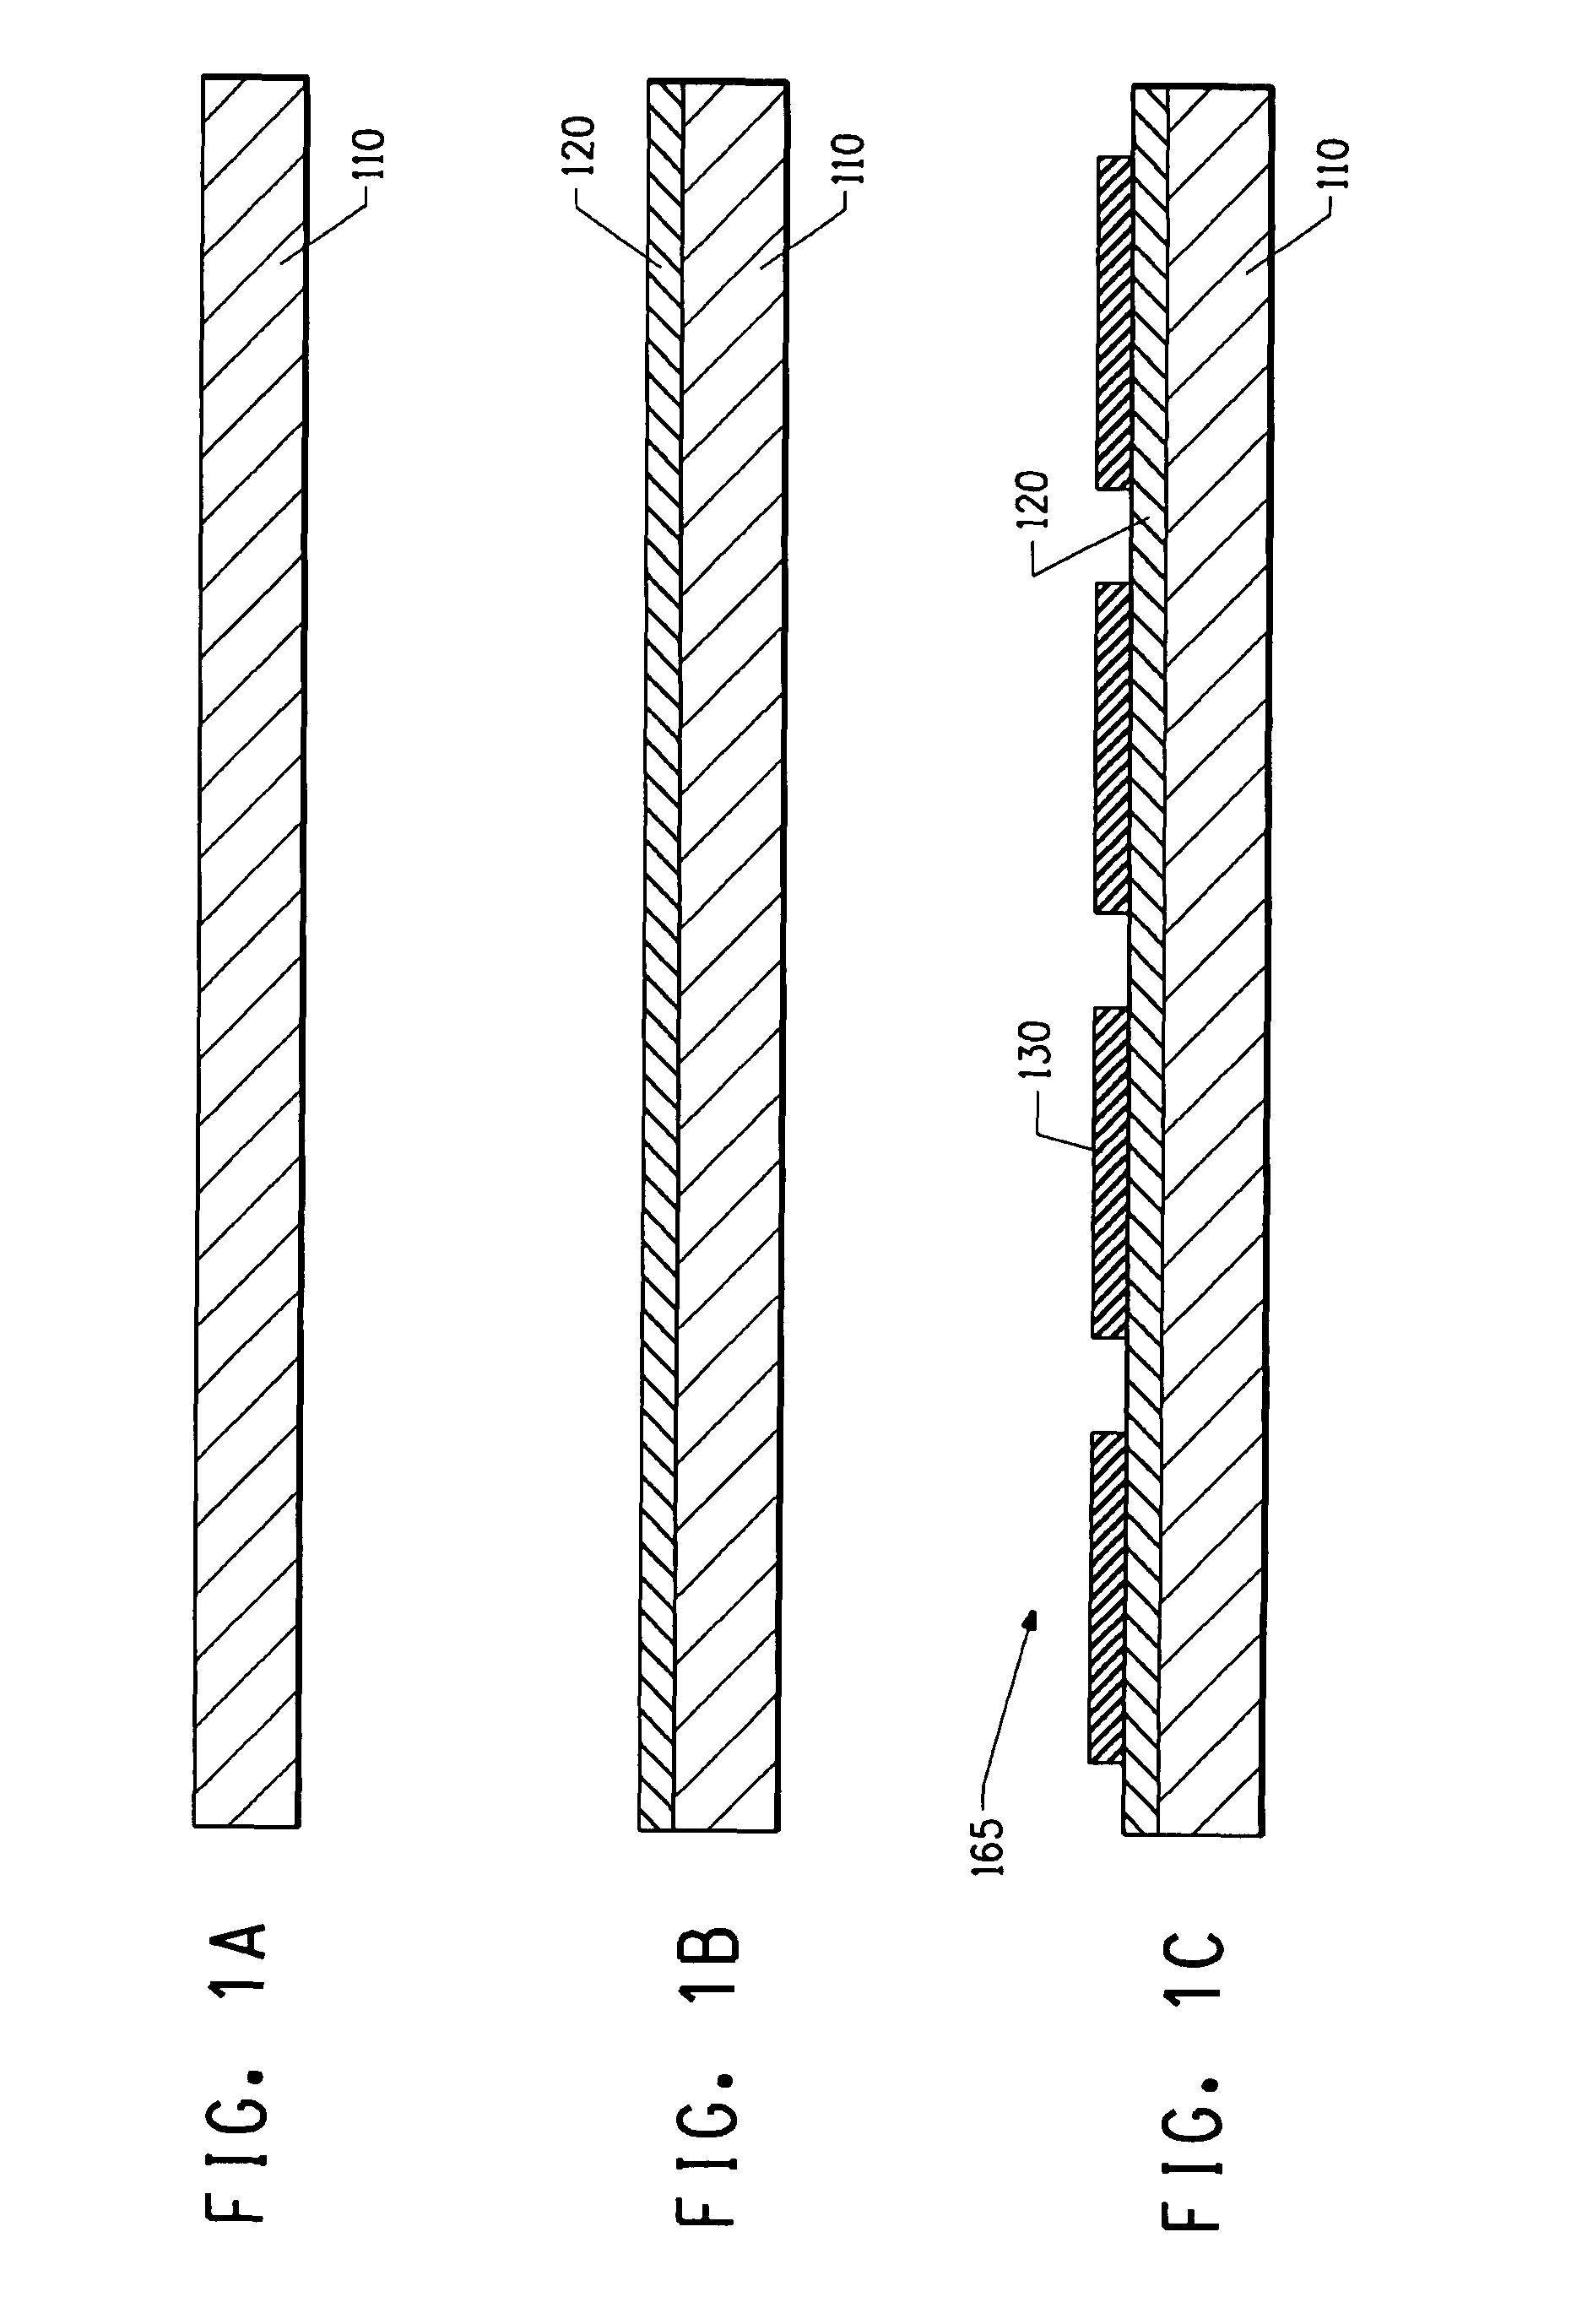 High-capacitance density thin film dielectrics having columnar grains formed on base-metal foils